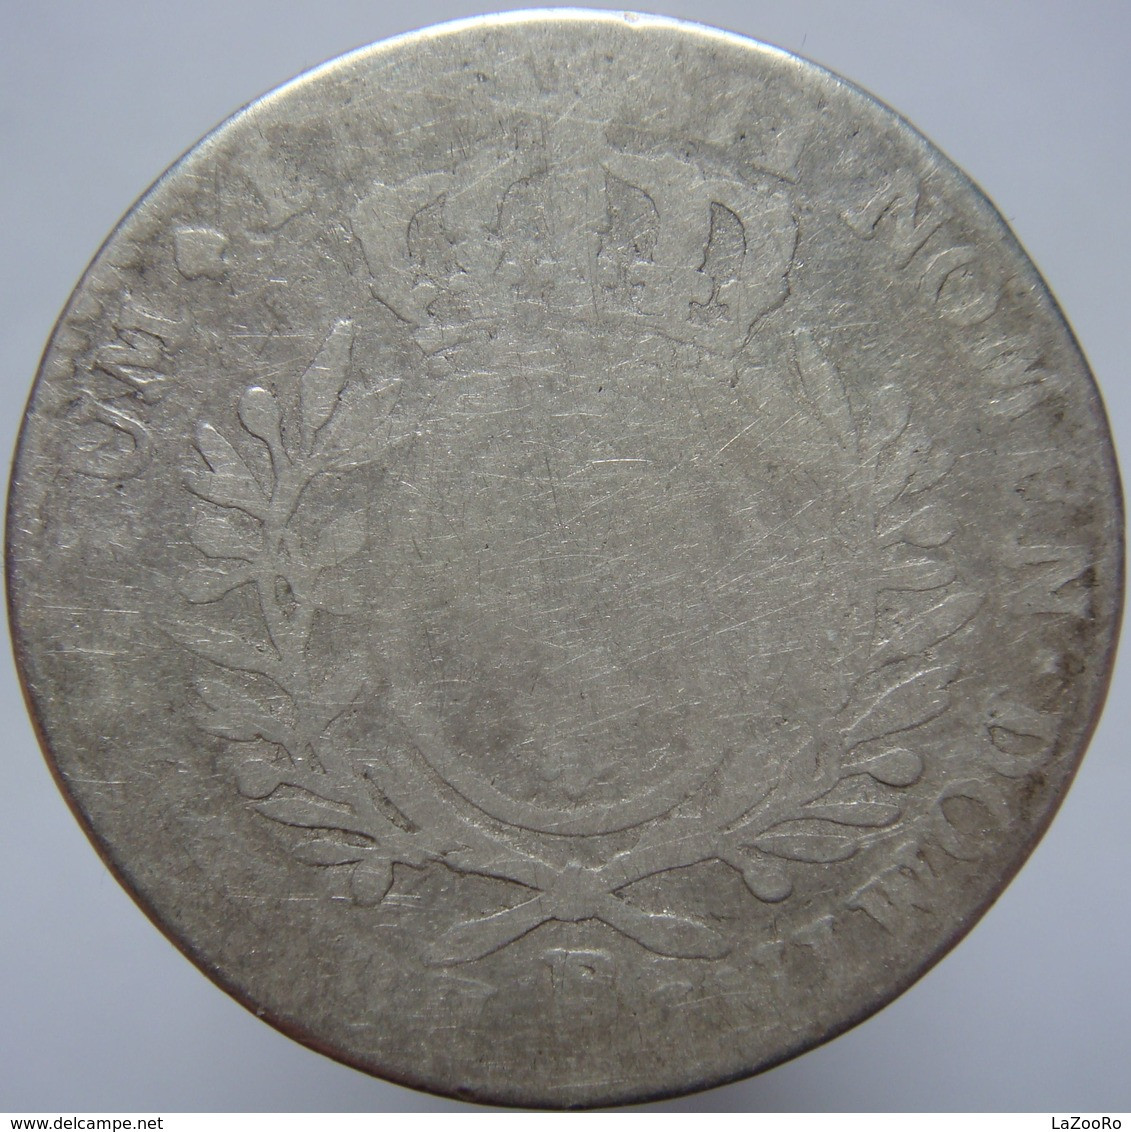 LaZooRo: France 1/2 Ecu 1726/40 VG - Silver - 1715-1774 Luis XV El Bien Amado